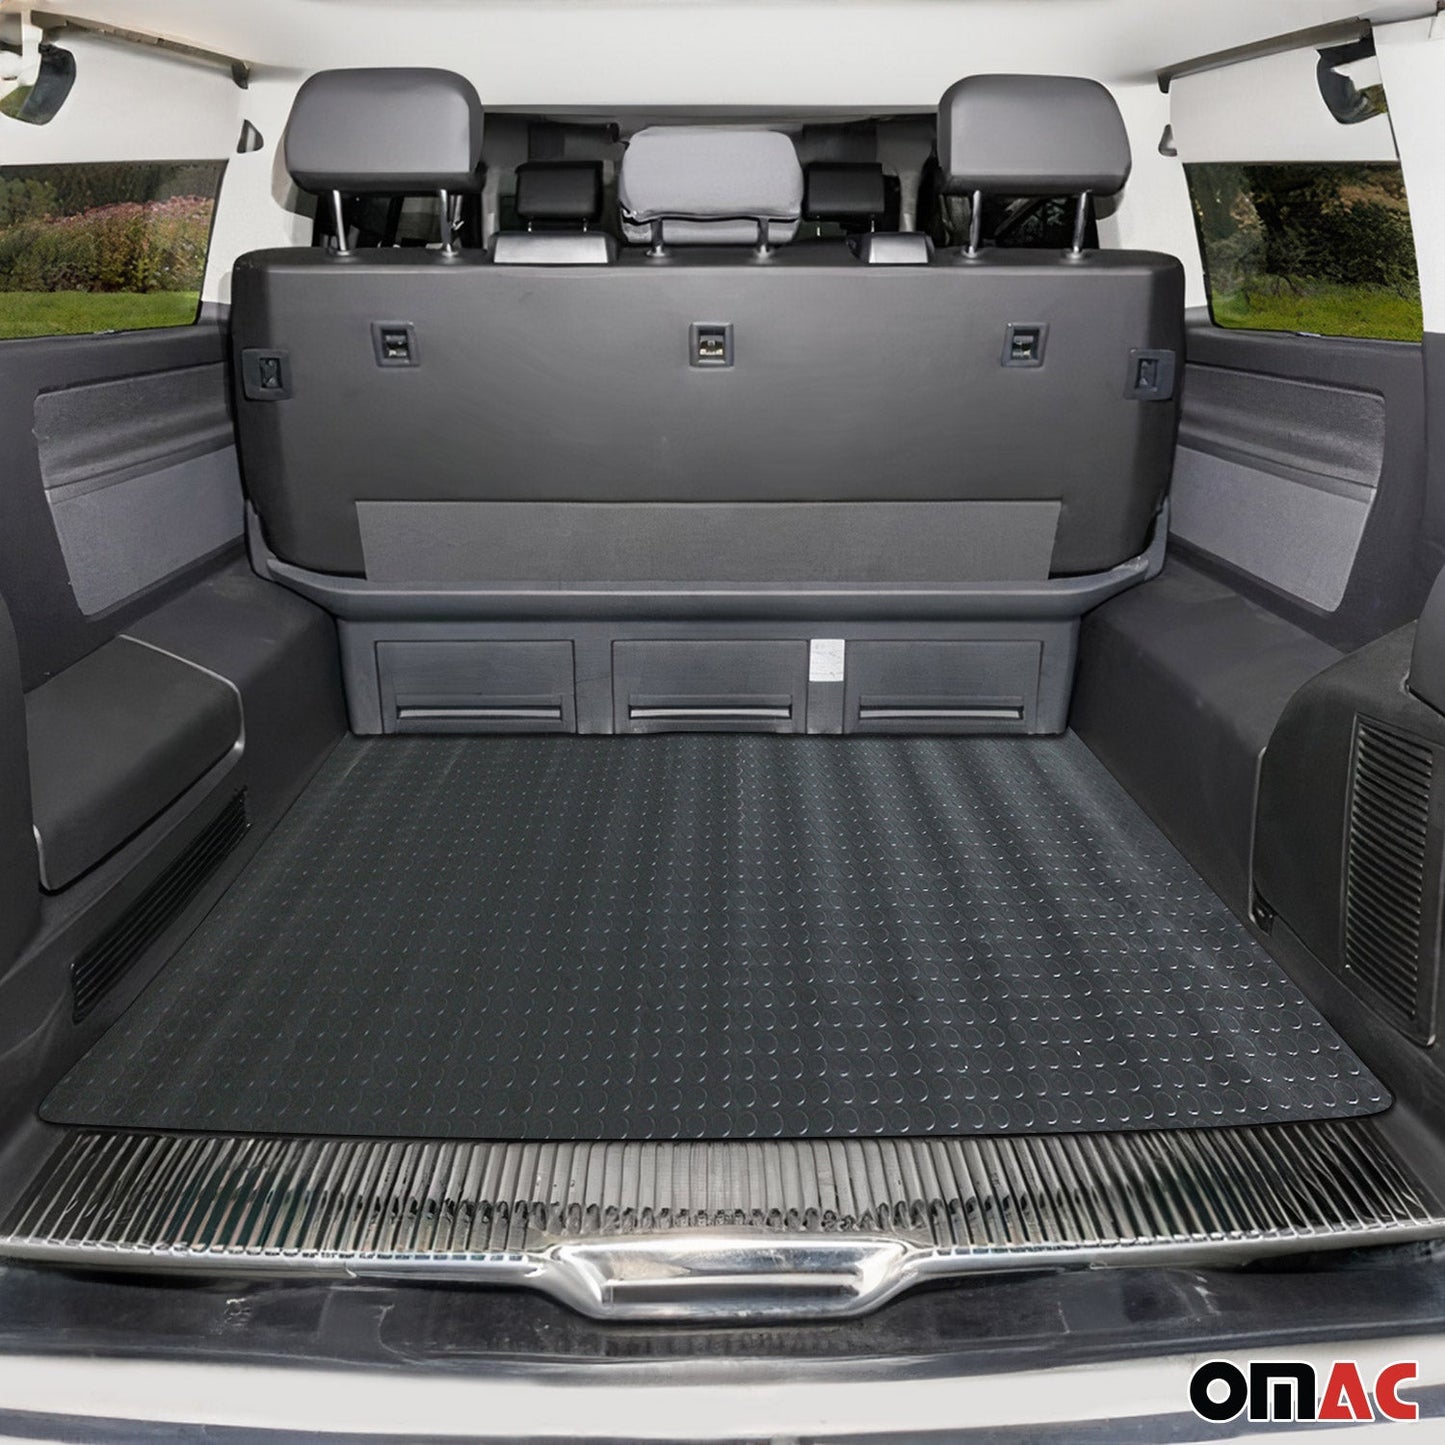 OMAC Trunk Flooring Mat Rubber Car Truck Rear Penny Bed Liner Black 118" x 79" 96FM003PB